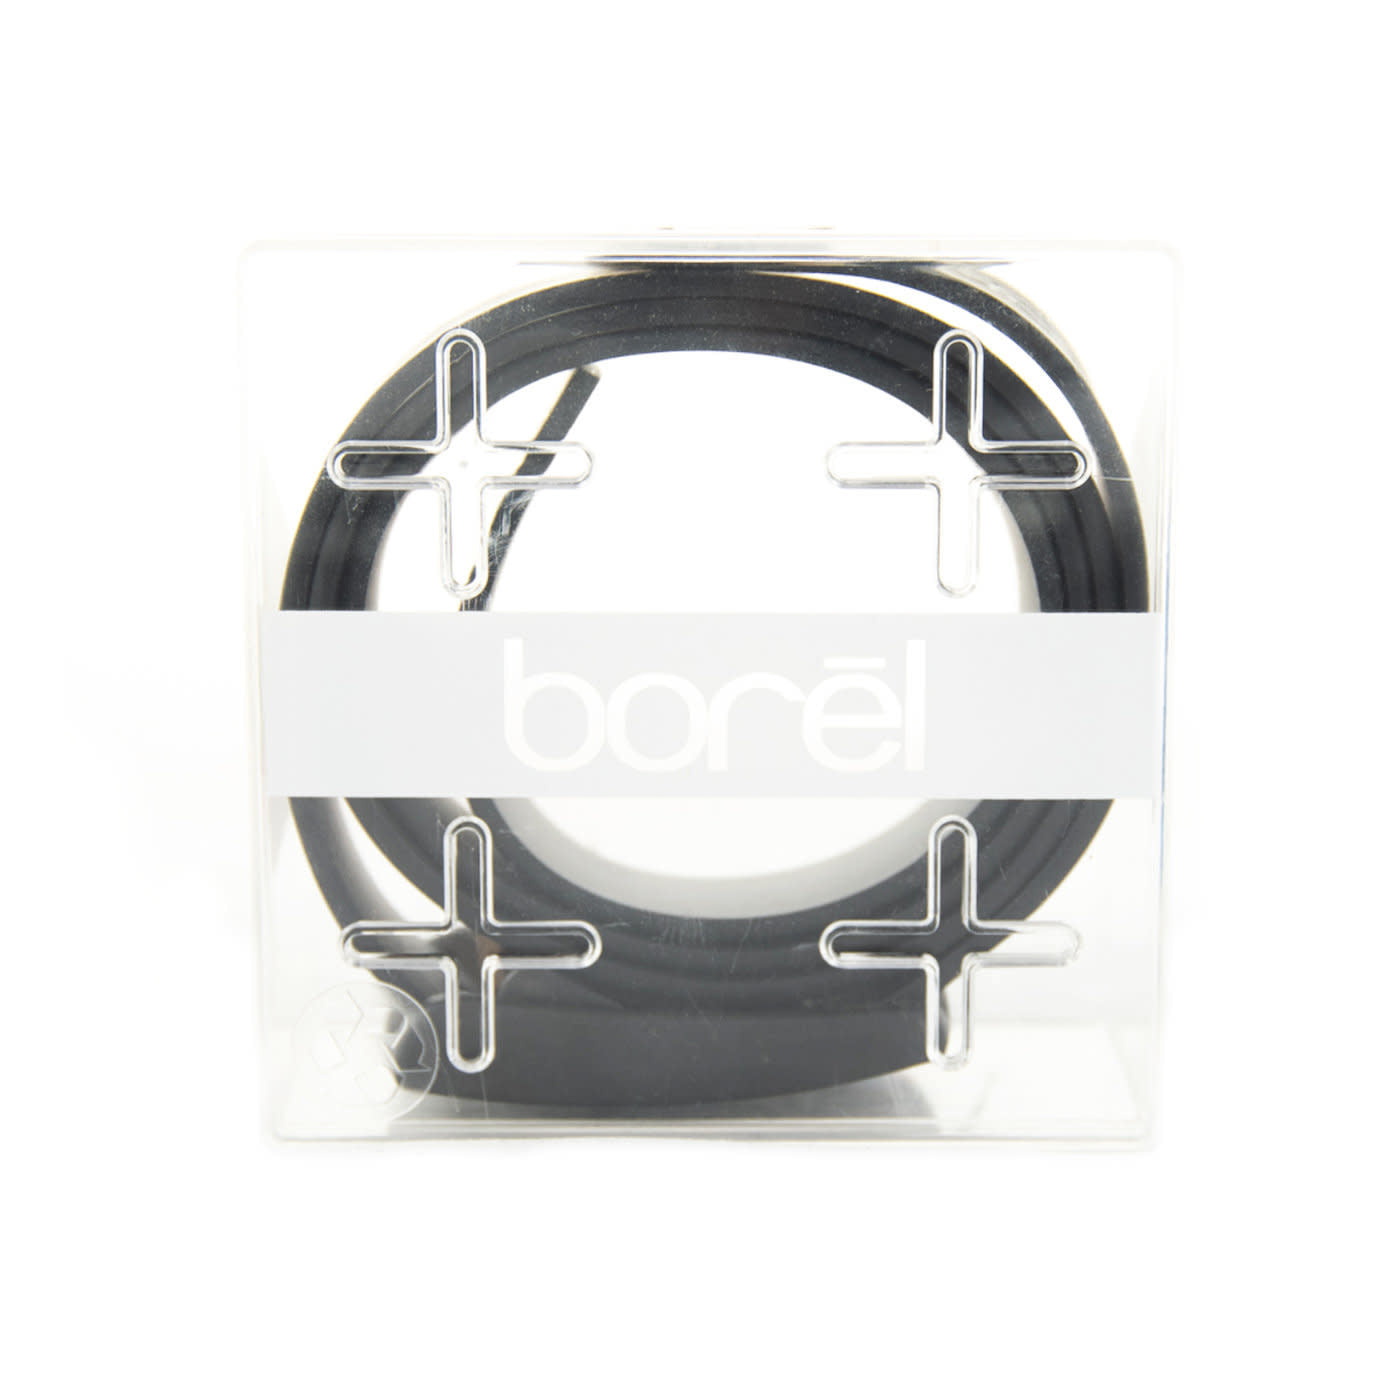 Borel Nickel Free Silicone Belt Black